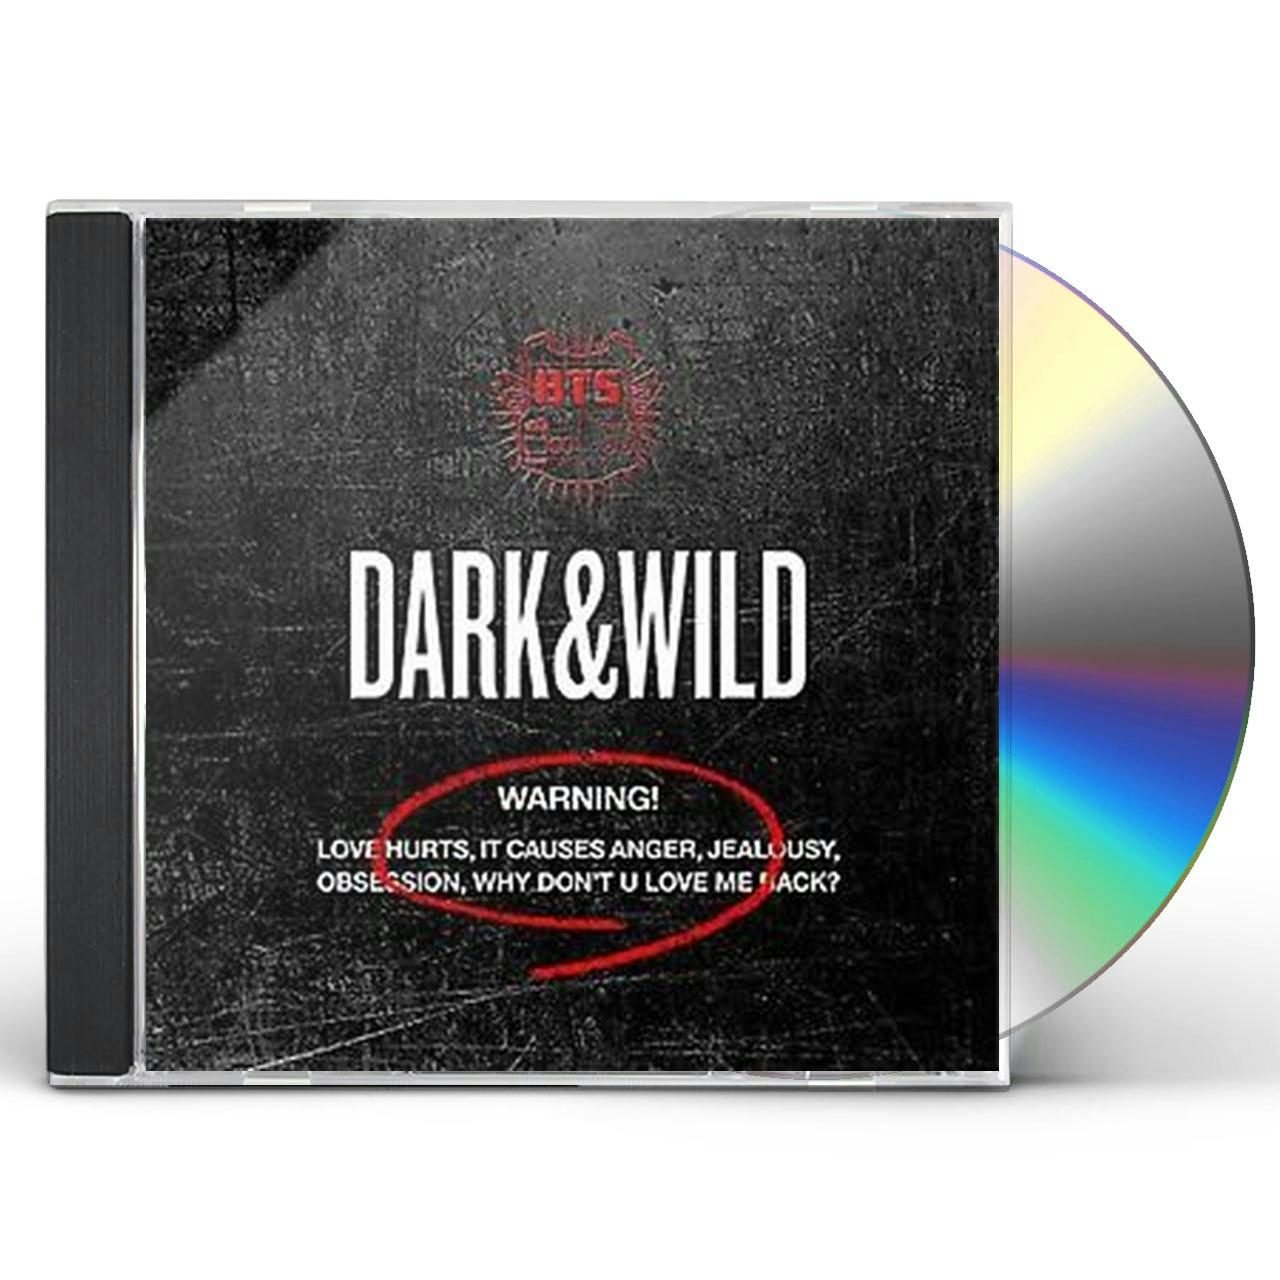 bts dark and wild albumkpop